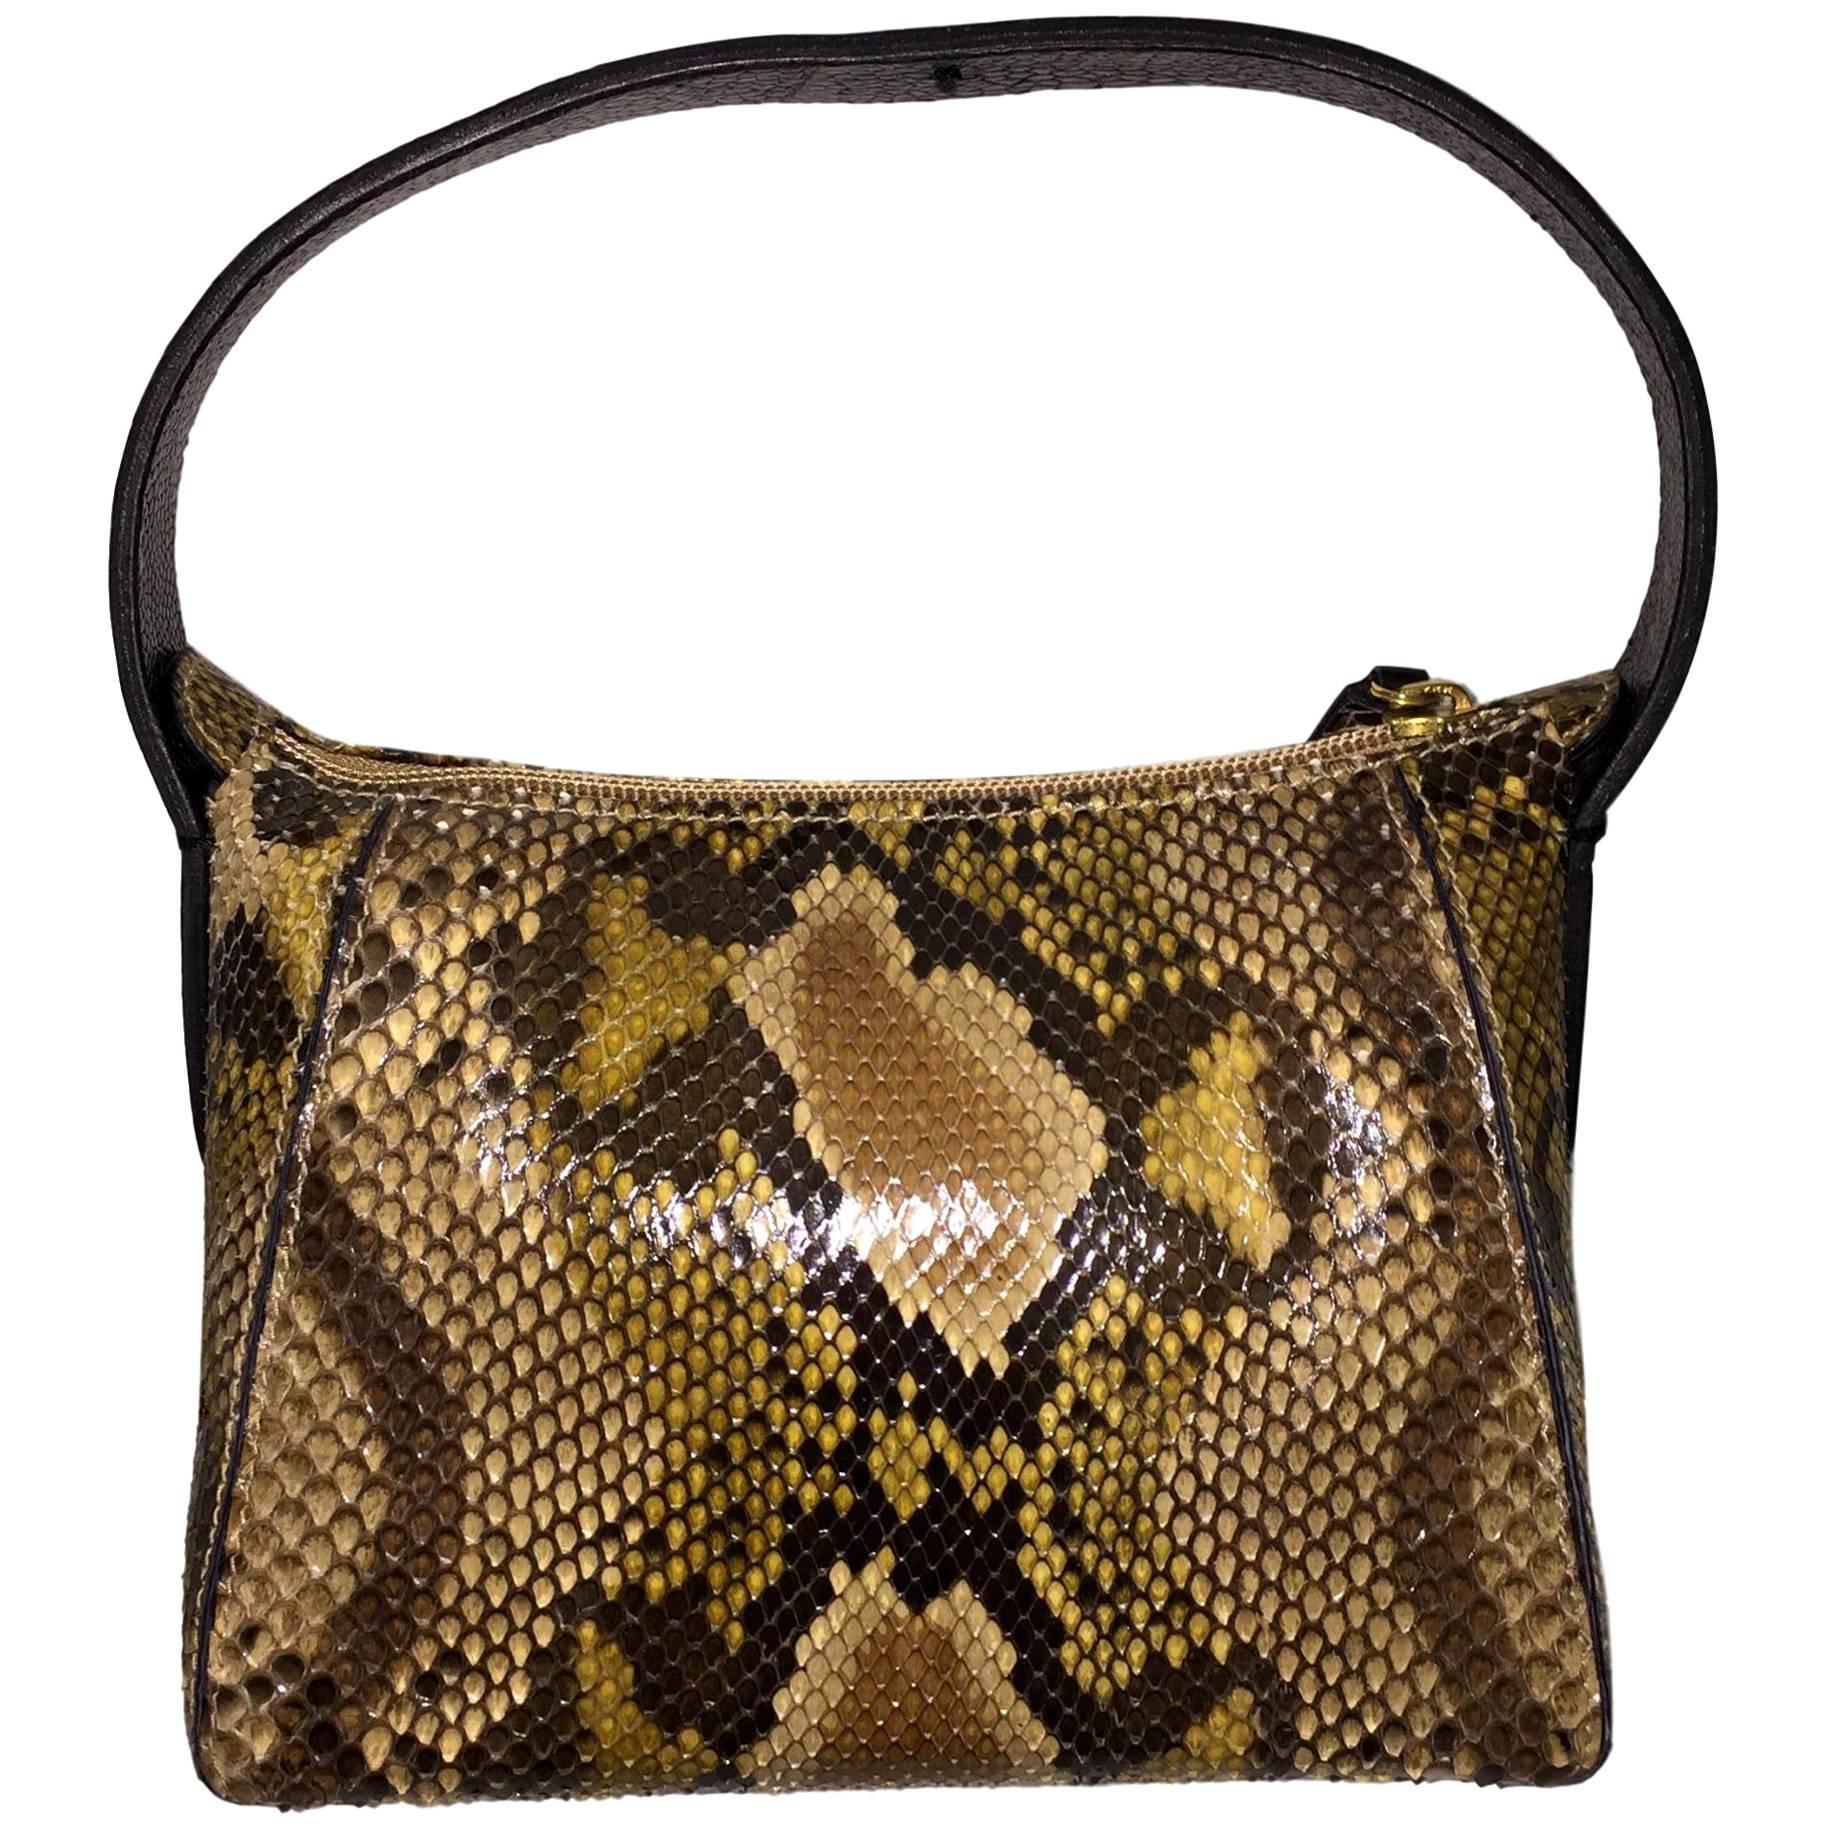 Gianfranco Ferre Python w/ Ostrich Trim & Handle Small Handbag Bag